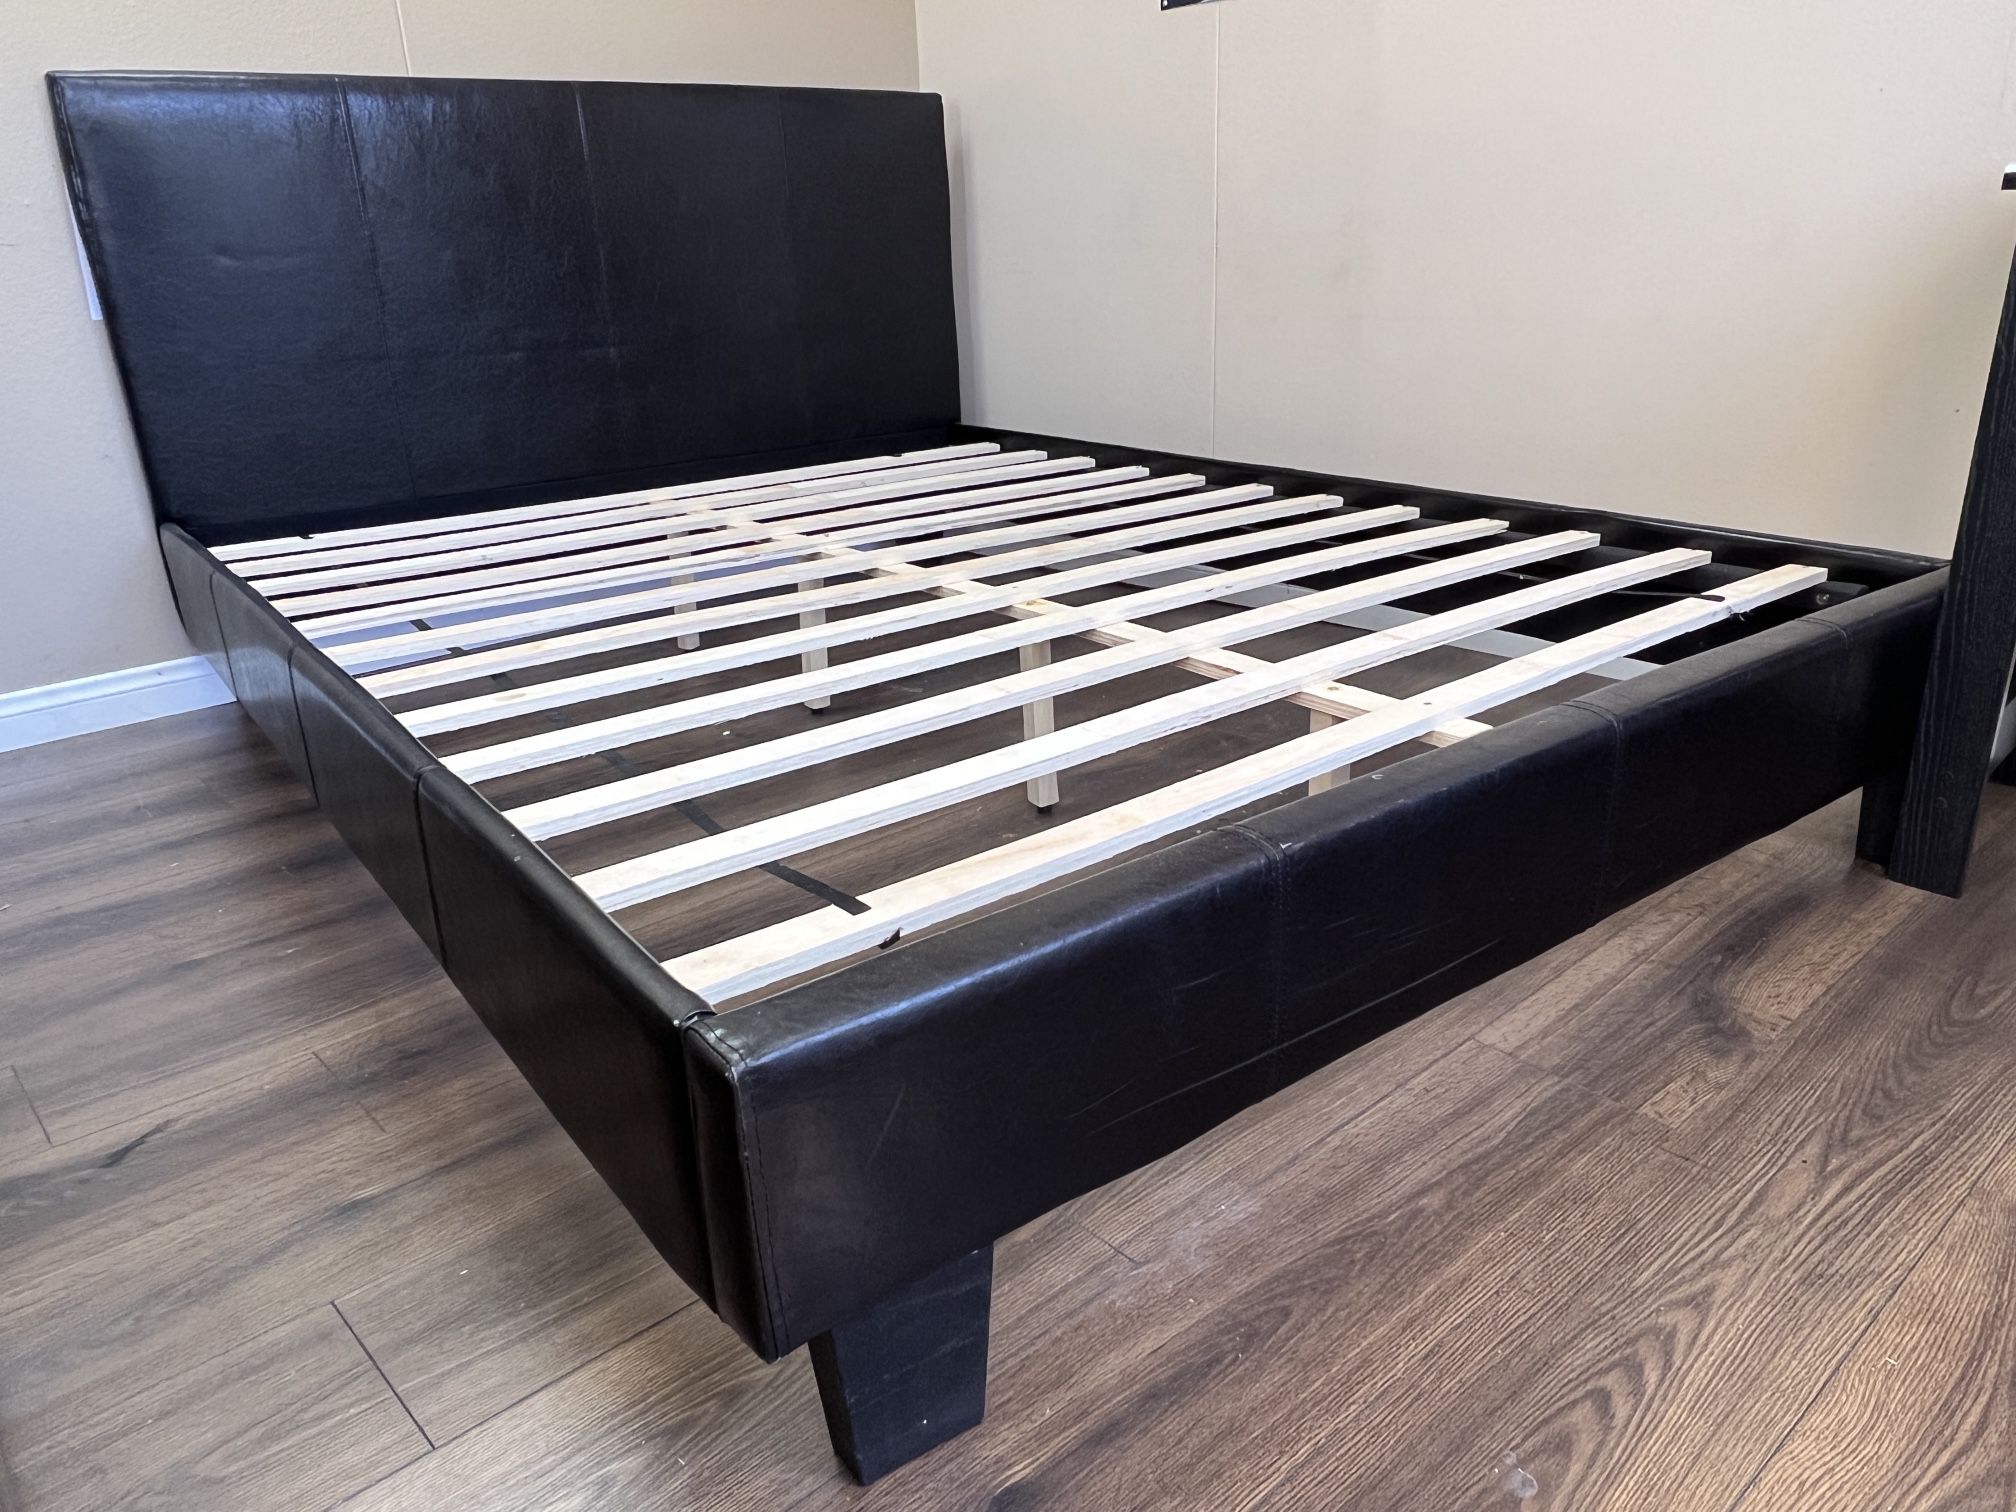 Floor Sample Queen Platform Bed Frame $180